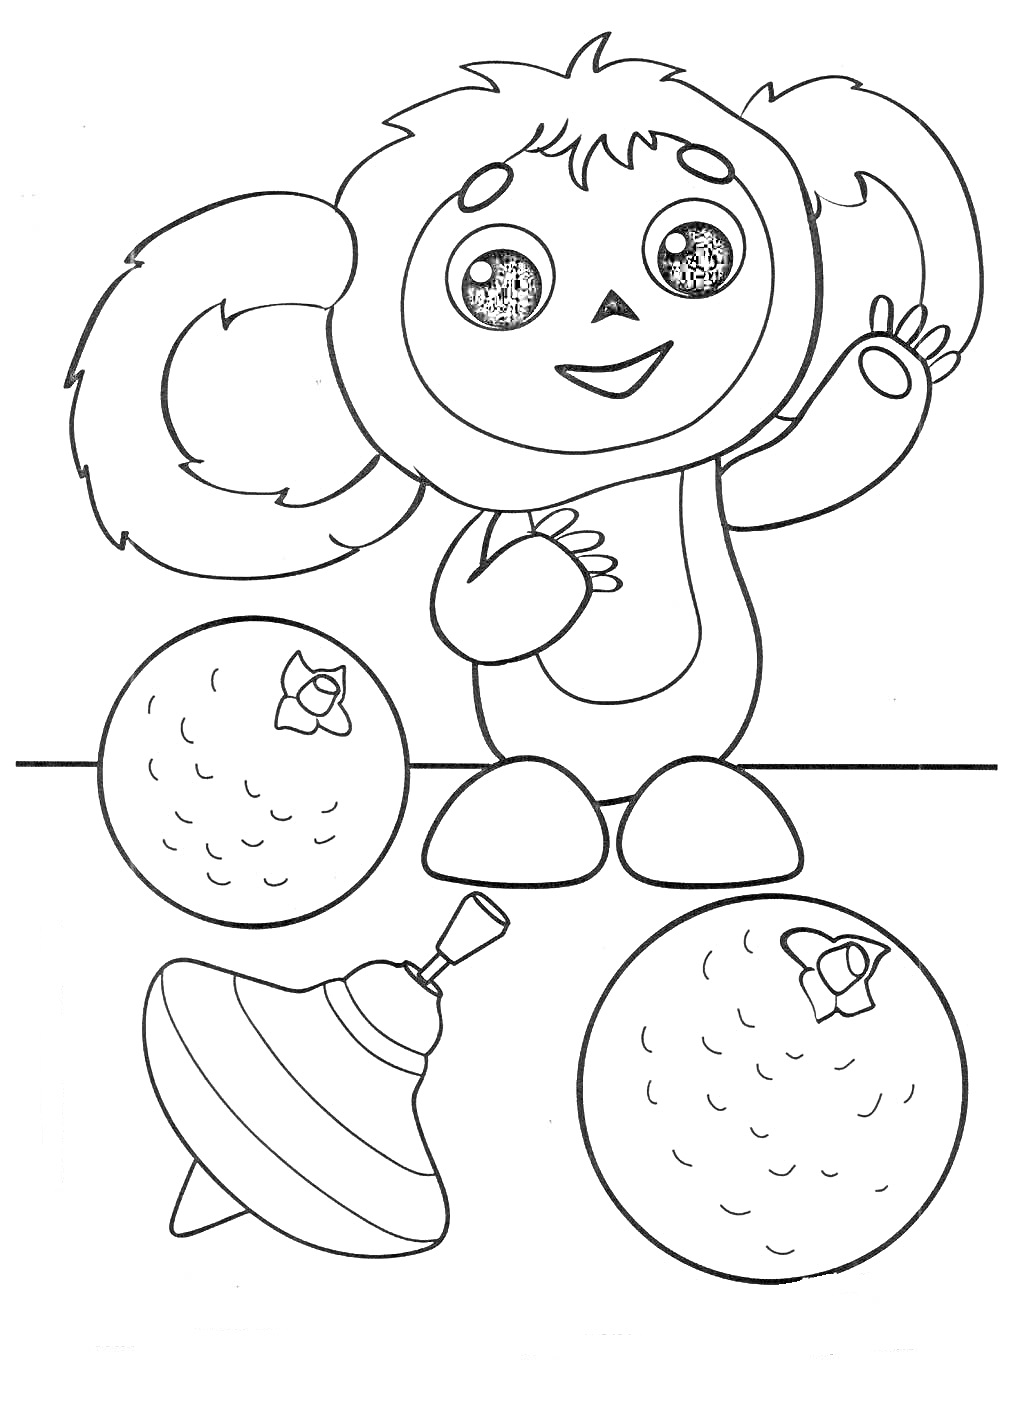 Раскраска Чебурашка с игрушечным волчком и двумя апельсинами